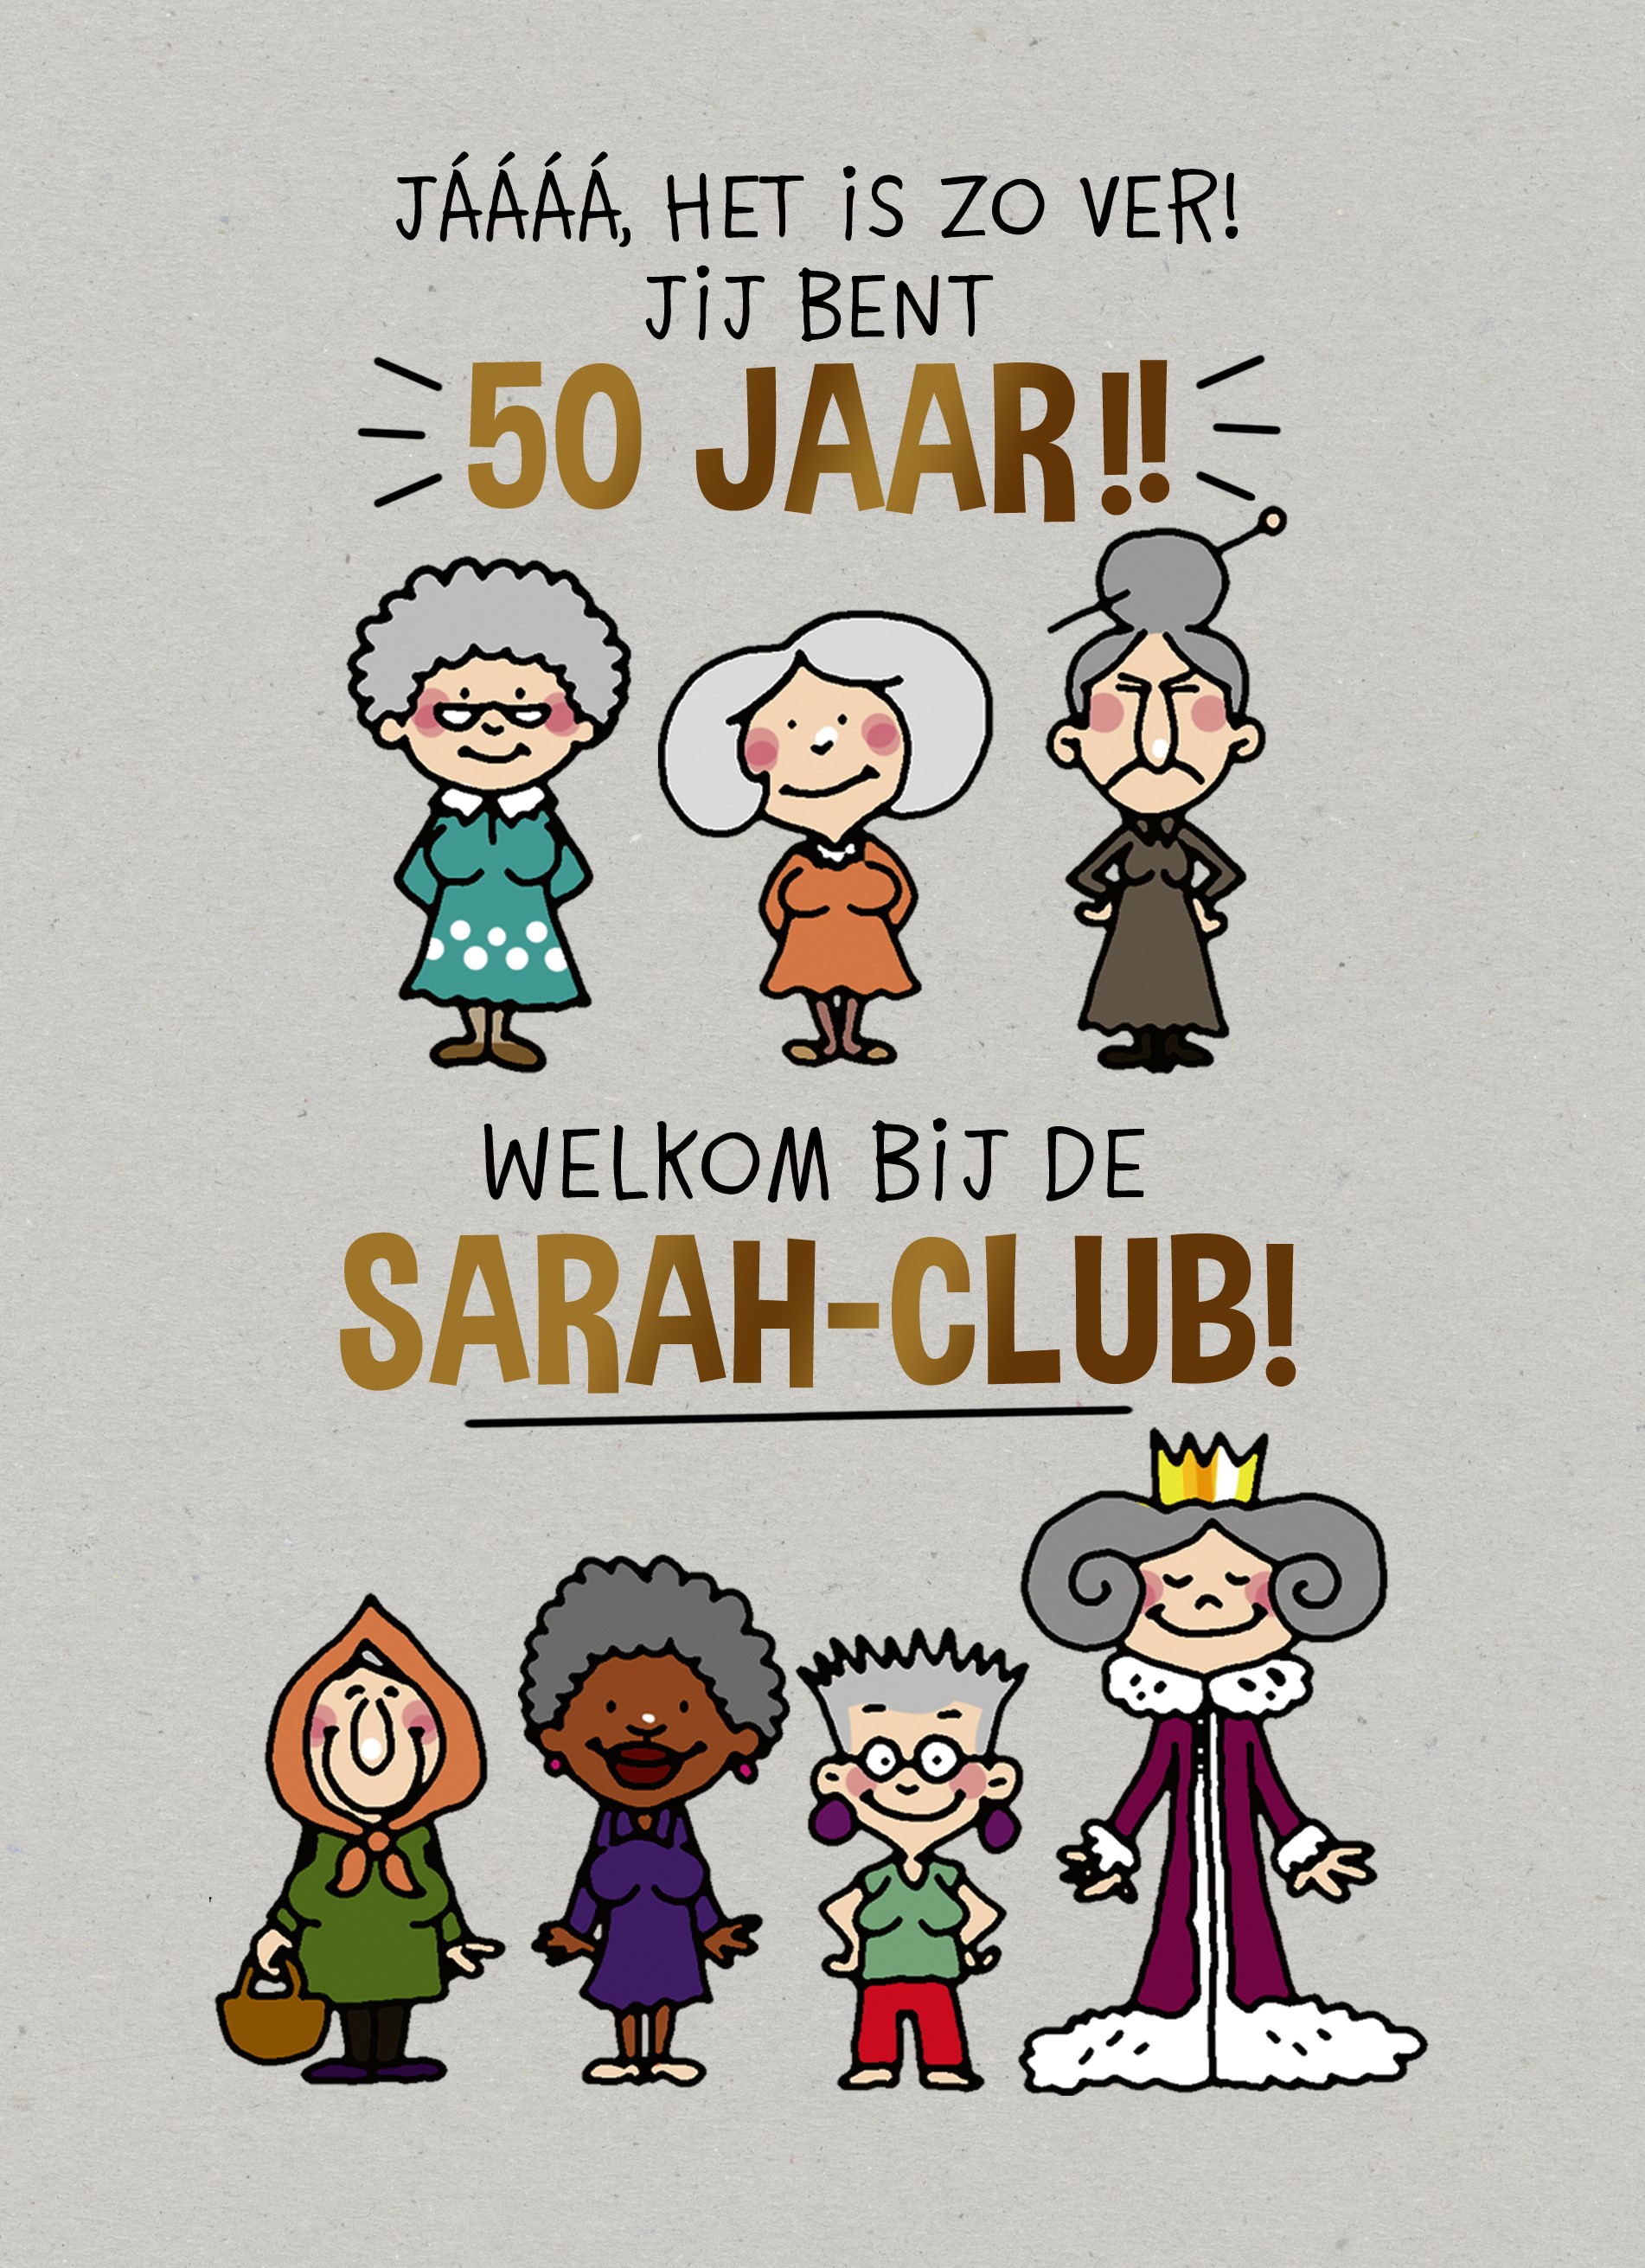 uitvinding Bedienen Floreren Welkom bij de sarah club | Hallmark